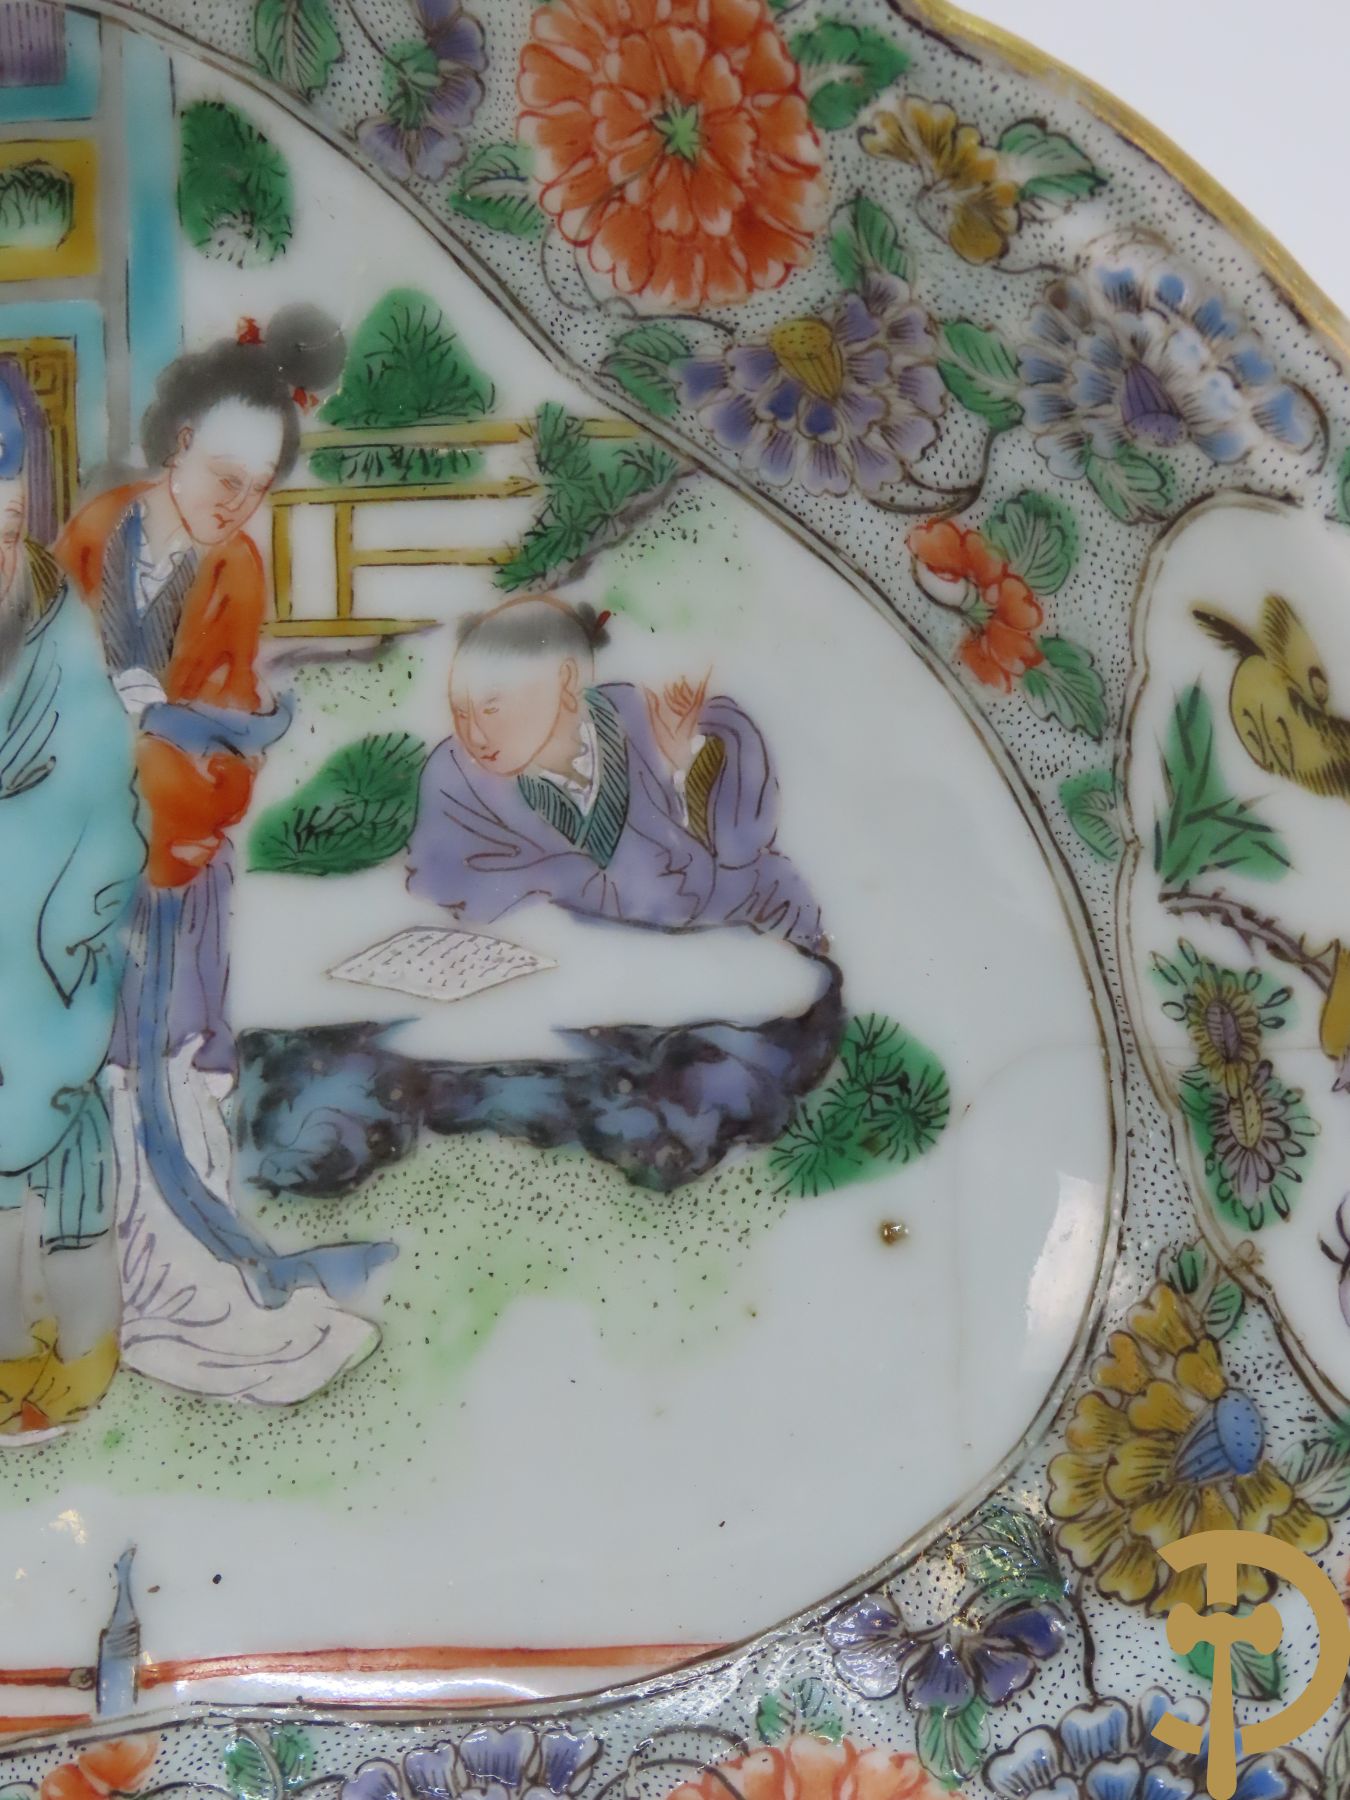 Ovale Chinese porseleinen Kanton schotel met geanimeerd decor en bloementaferelen + hardhouten box met landschap in parelmoer + 3 houtgesculpteerde oosterse figuren